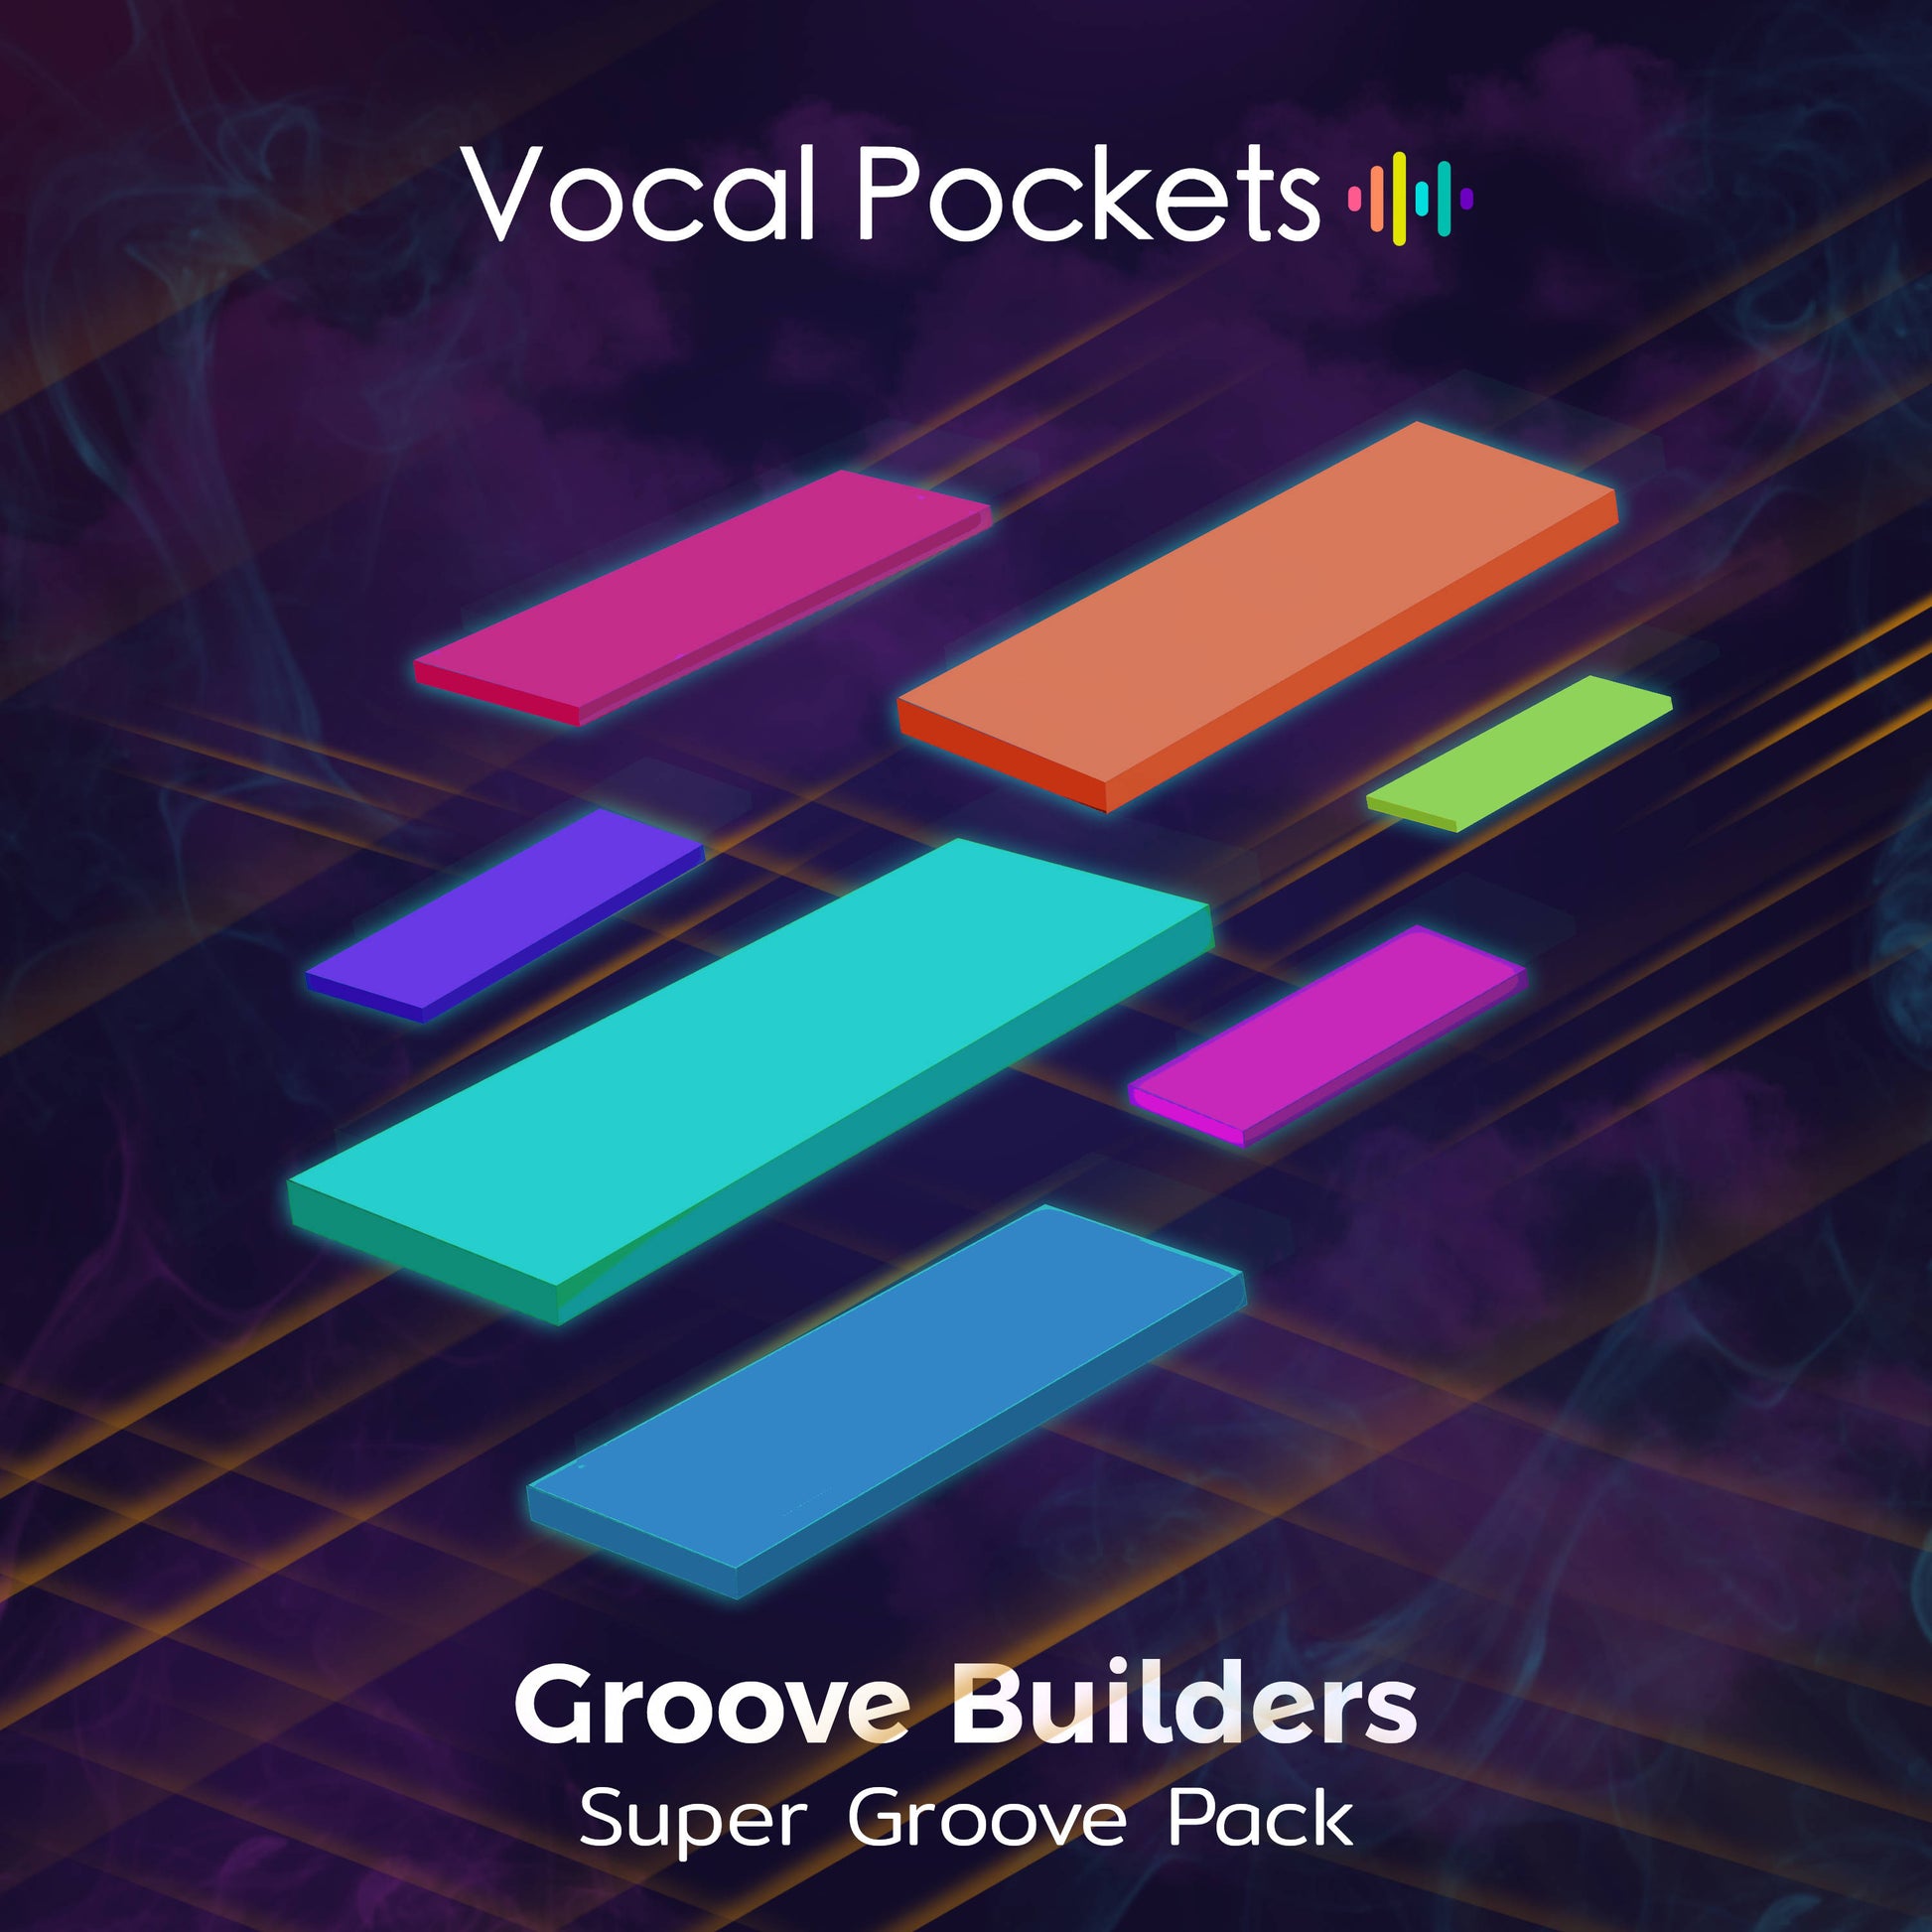 Super Groove Pack - Vocal Pockets